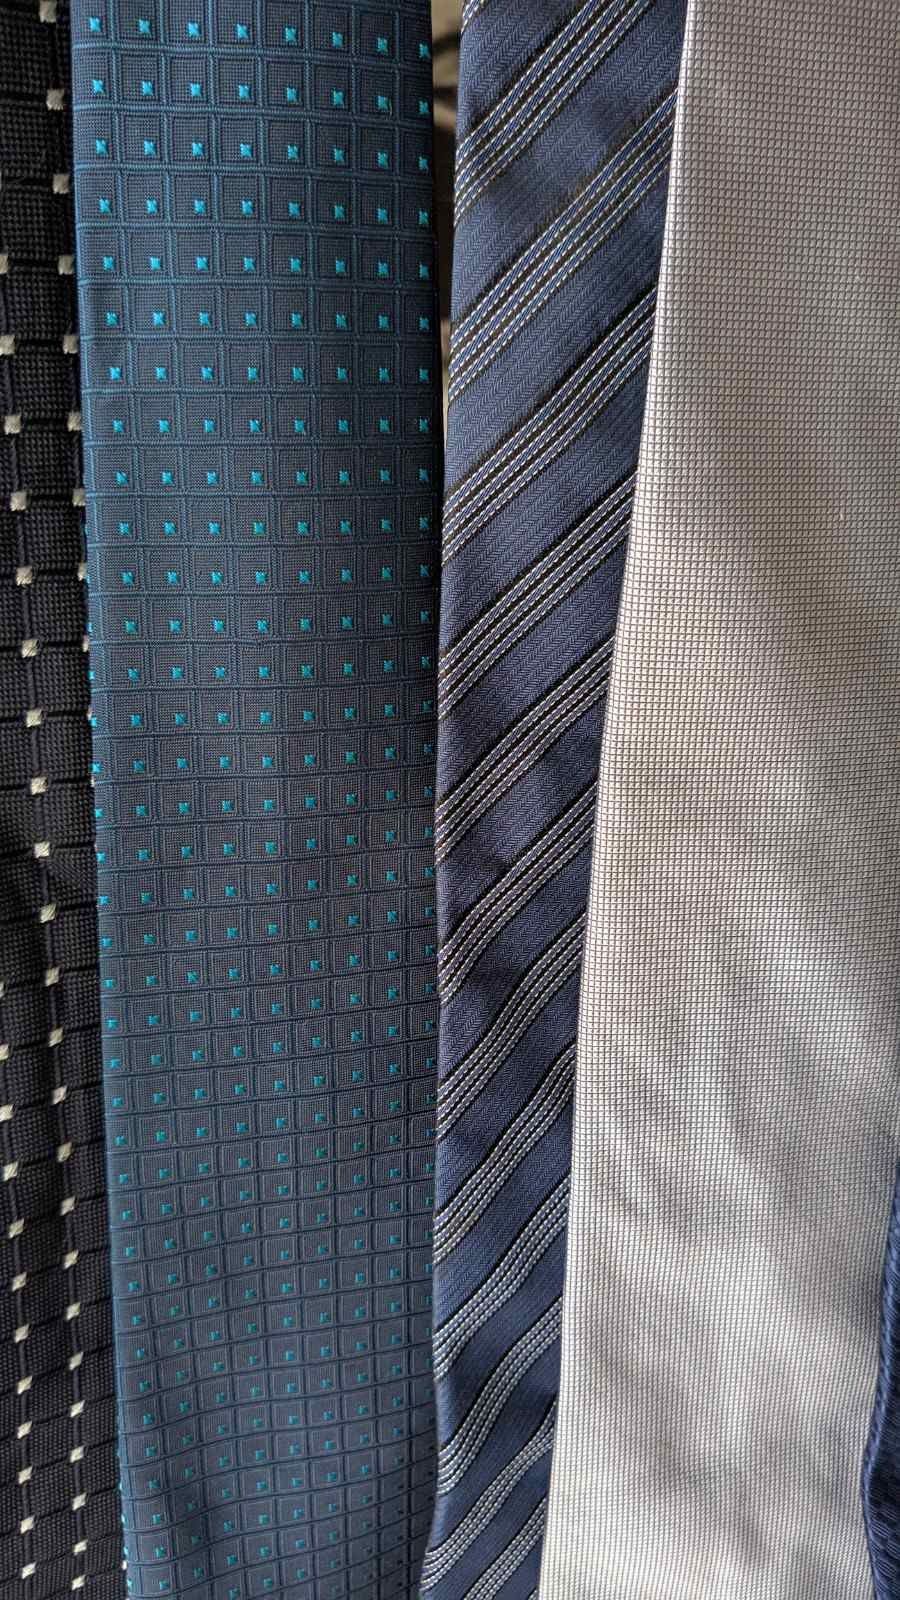 Продам мужские галстуки